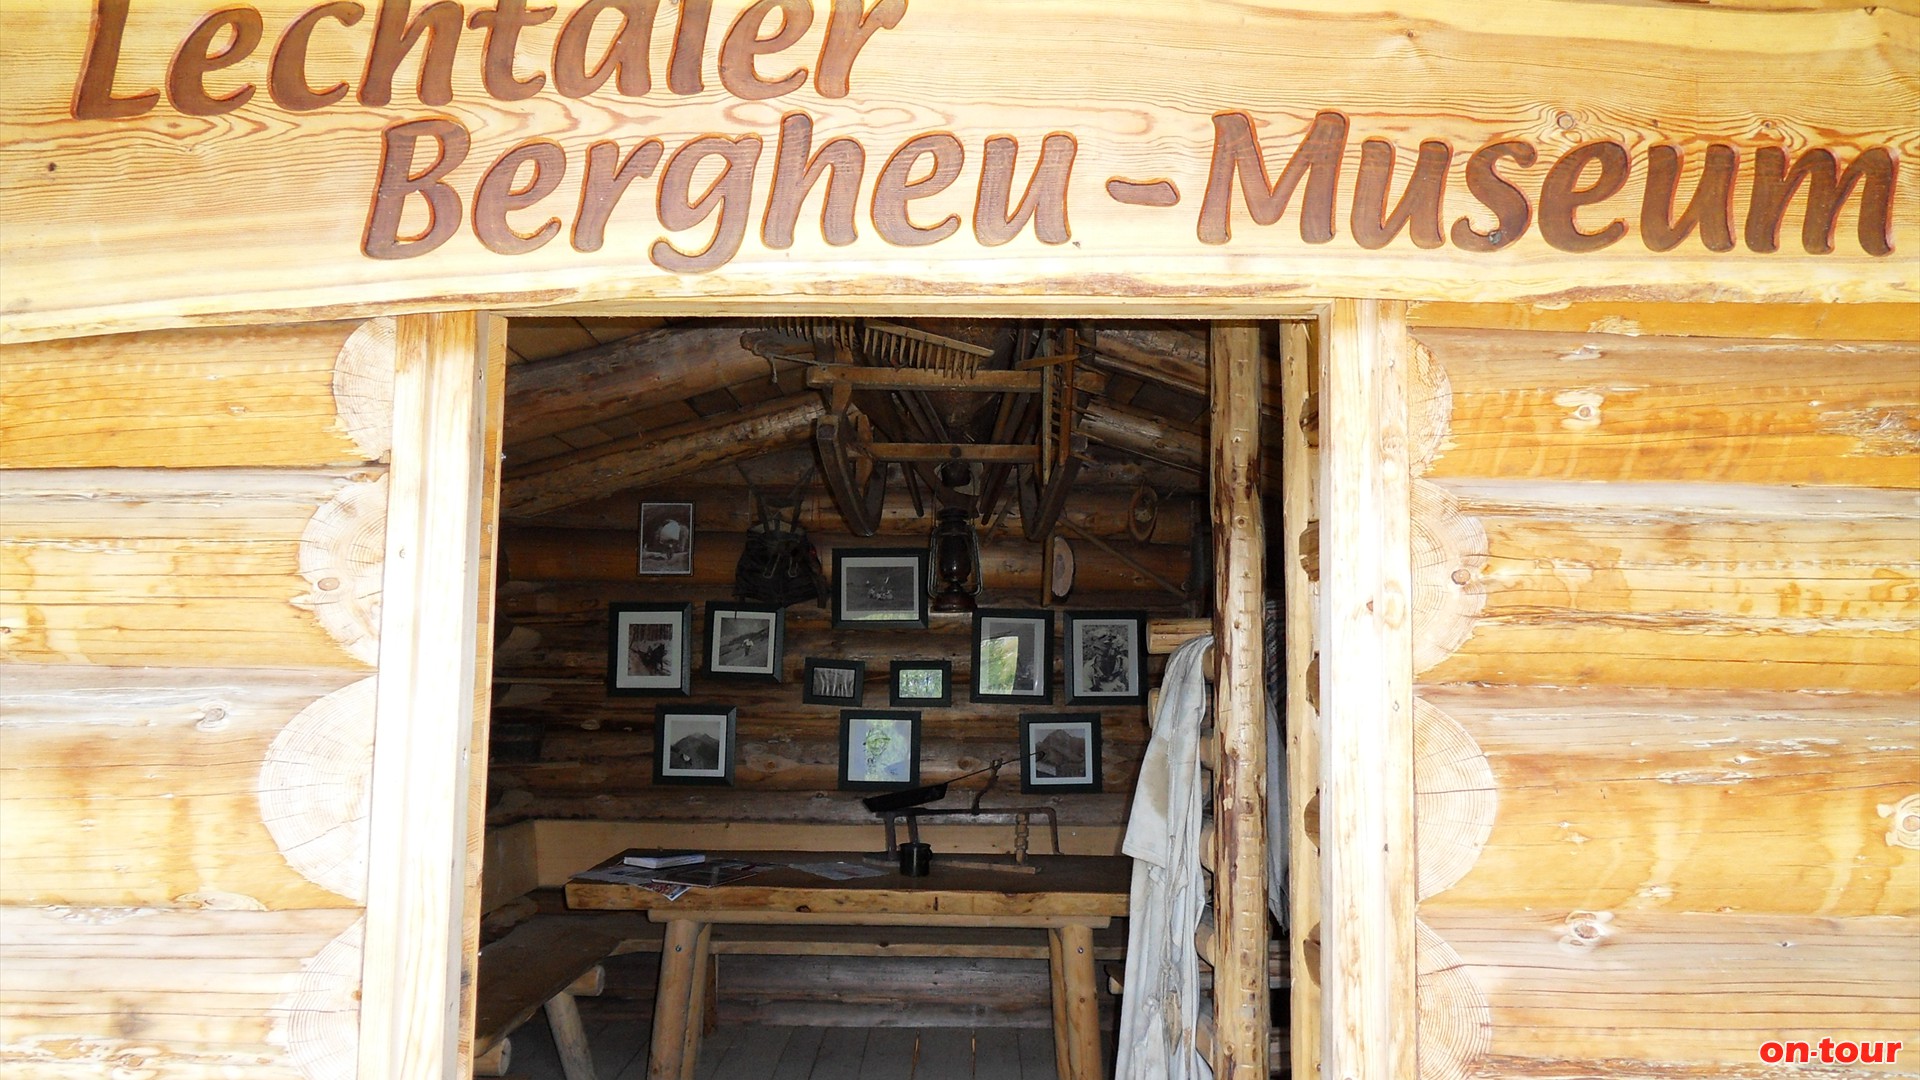 Sehr liebevoll eingerichtetes Bergheu-Museum.